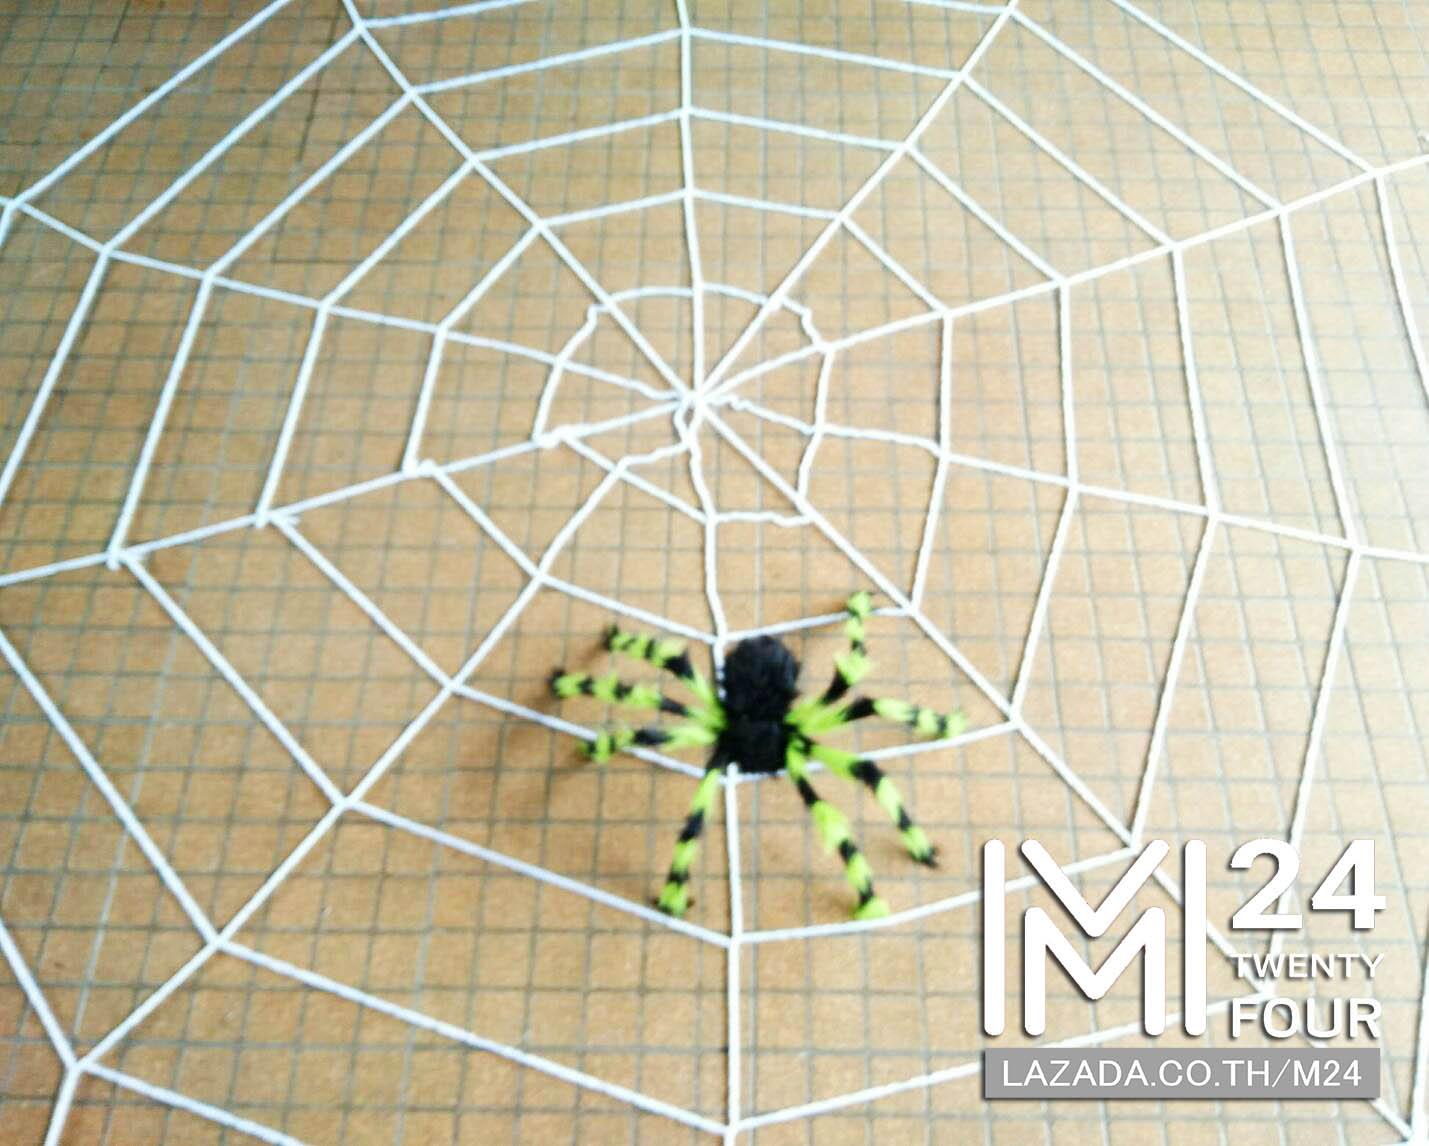 1 เซ็ต 2 ชิ้น ขนาด 3x3 เมตร ใยแมงมุมยักษ์ สีขาว 1 ชิ้น + แมงมุมยักษ์ สีเขียวดำ 1 ตัว แมงมุมปลอม แมงมุม ยักษ์ ตัวใหญ่ ของปลอม ของเล่น ตัวตลก ของเล่นแกล้งคน อุปกรณ์ตกแต่ง ฮาโลวีน black widow giant spider web party happy halloween